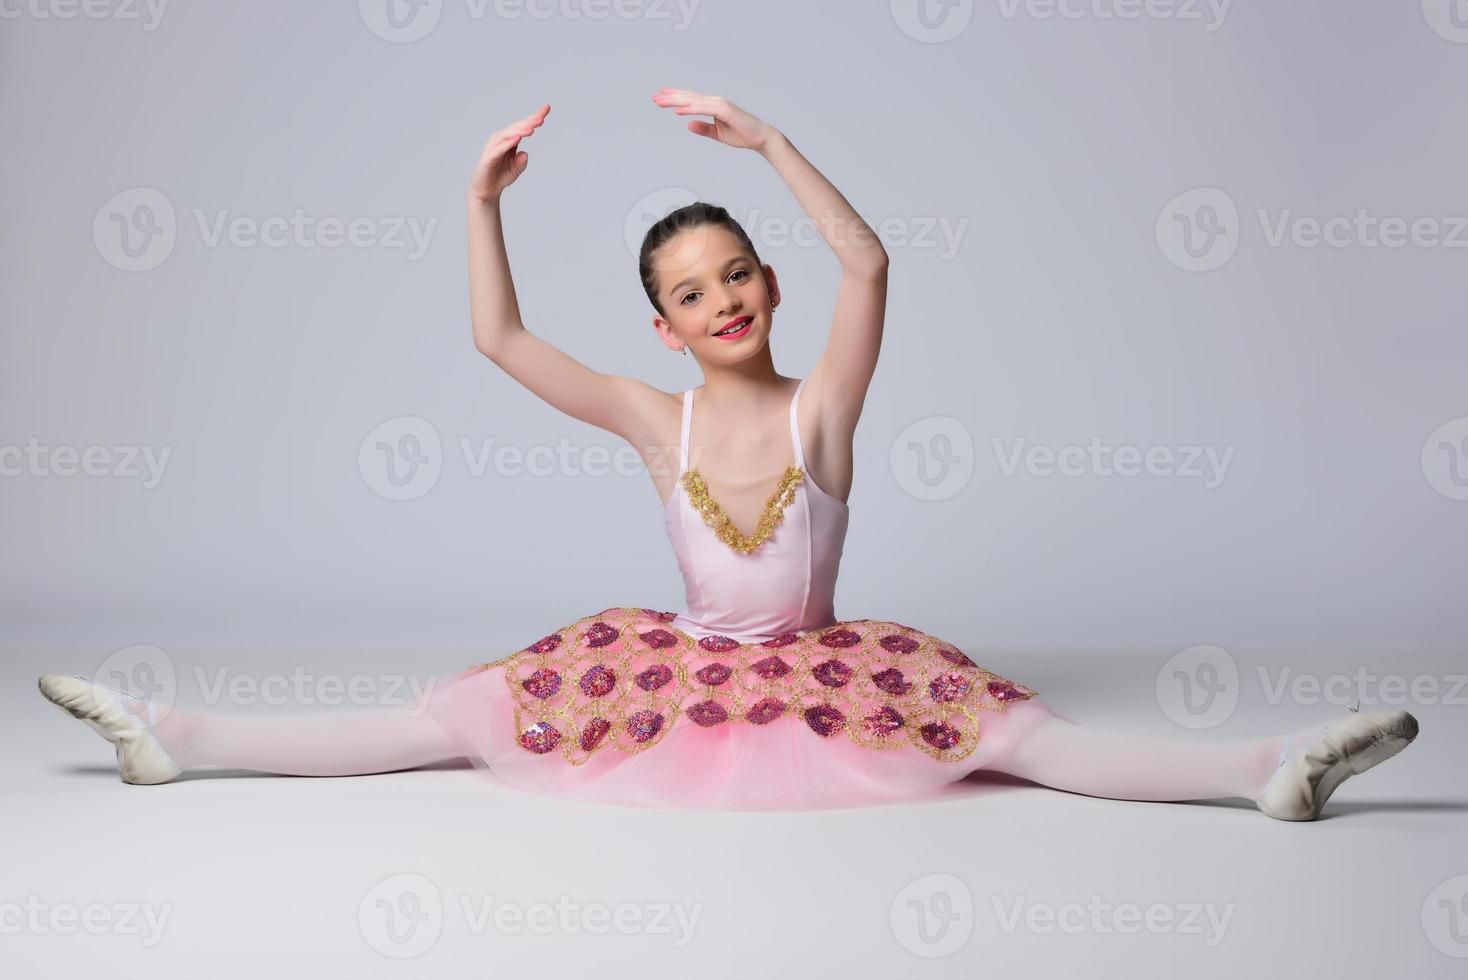 belle fille danseuse de ballet. photo